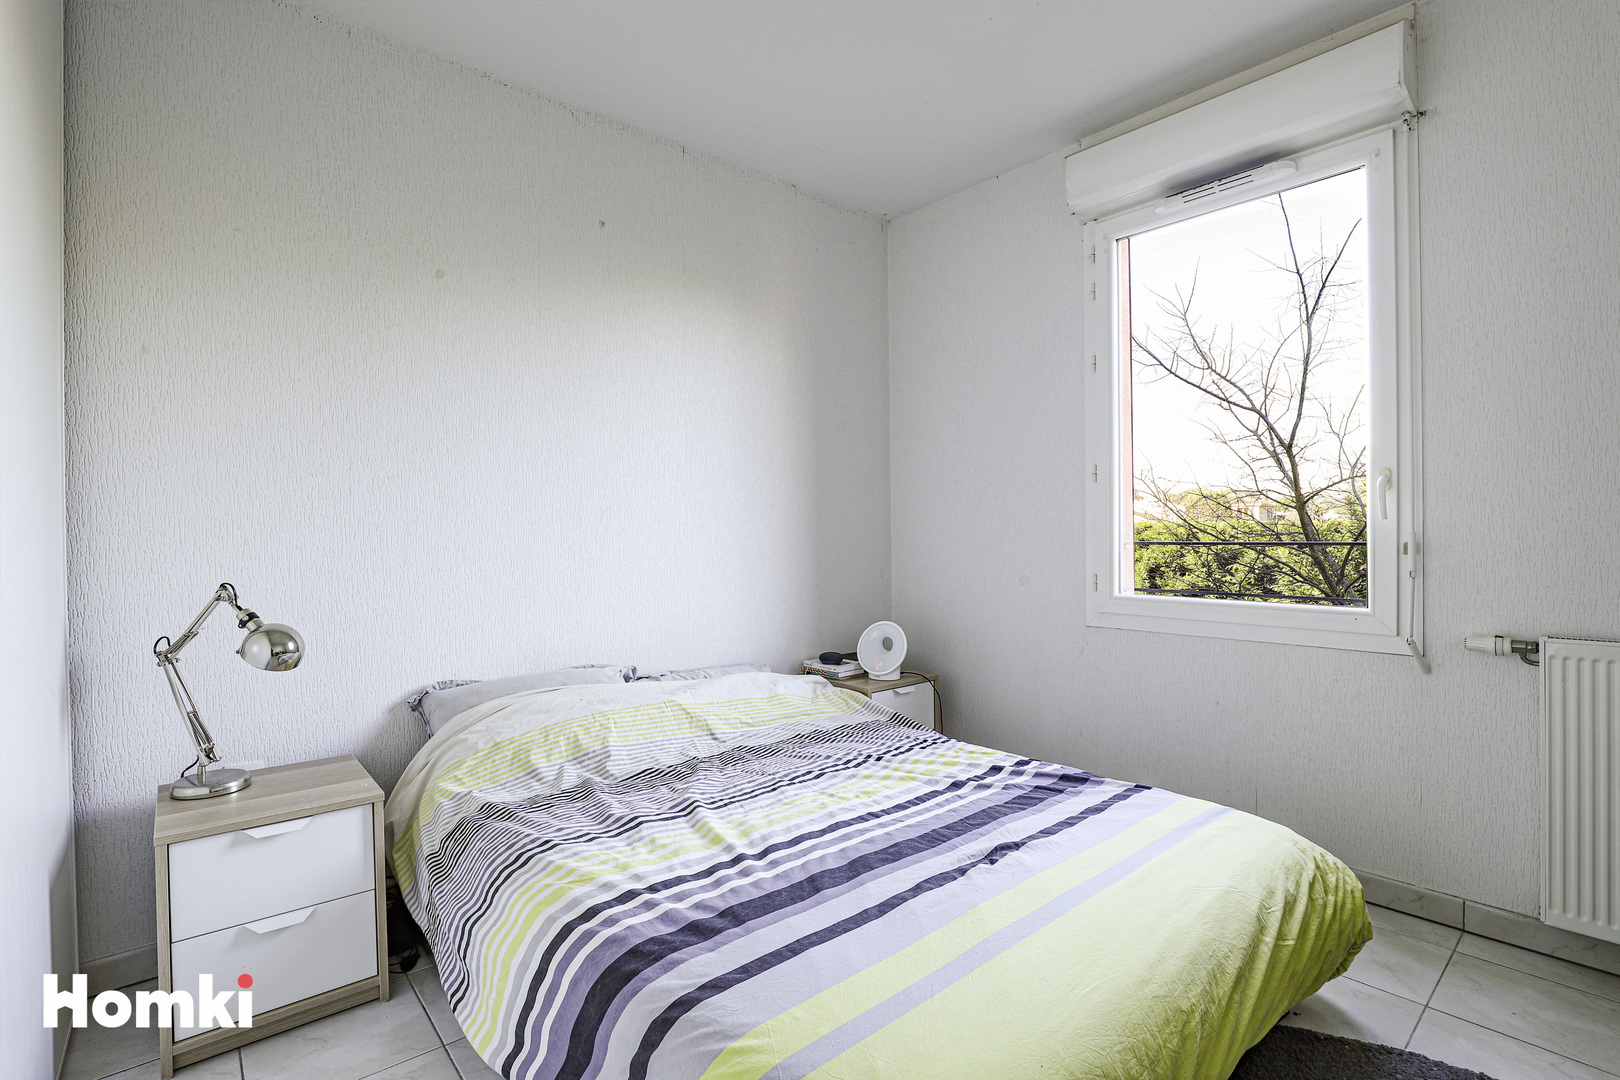 Homki - Vente Appartement  de 59.0 m² à Castanet-Tolosan 31320